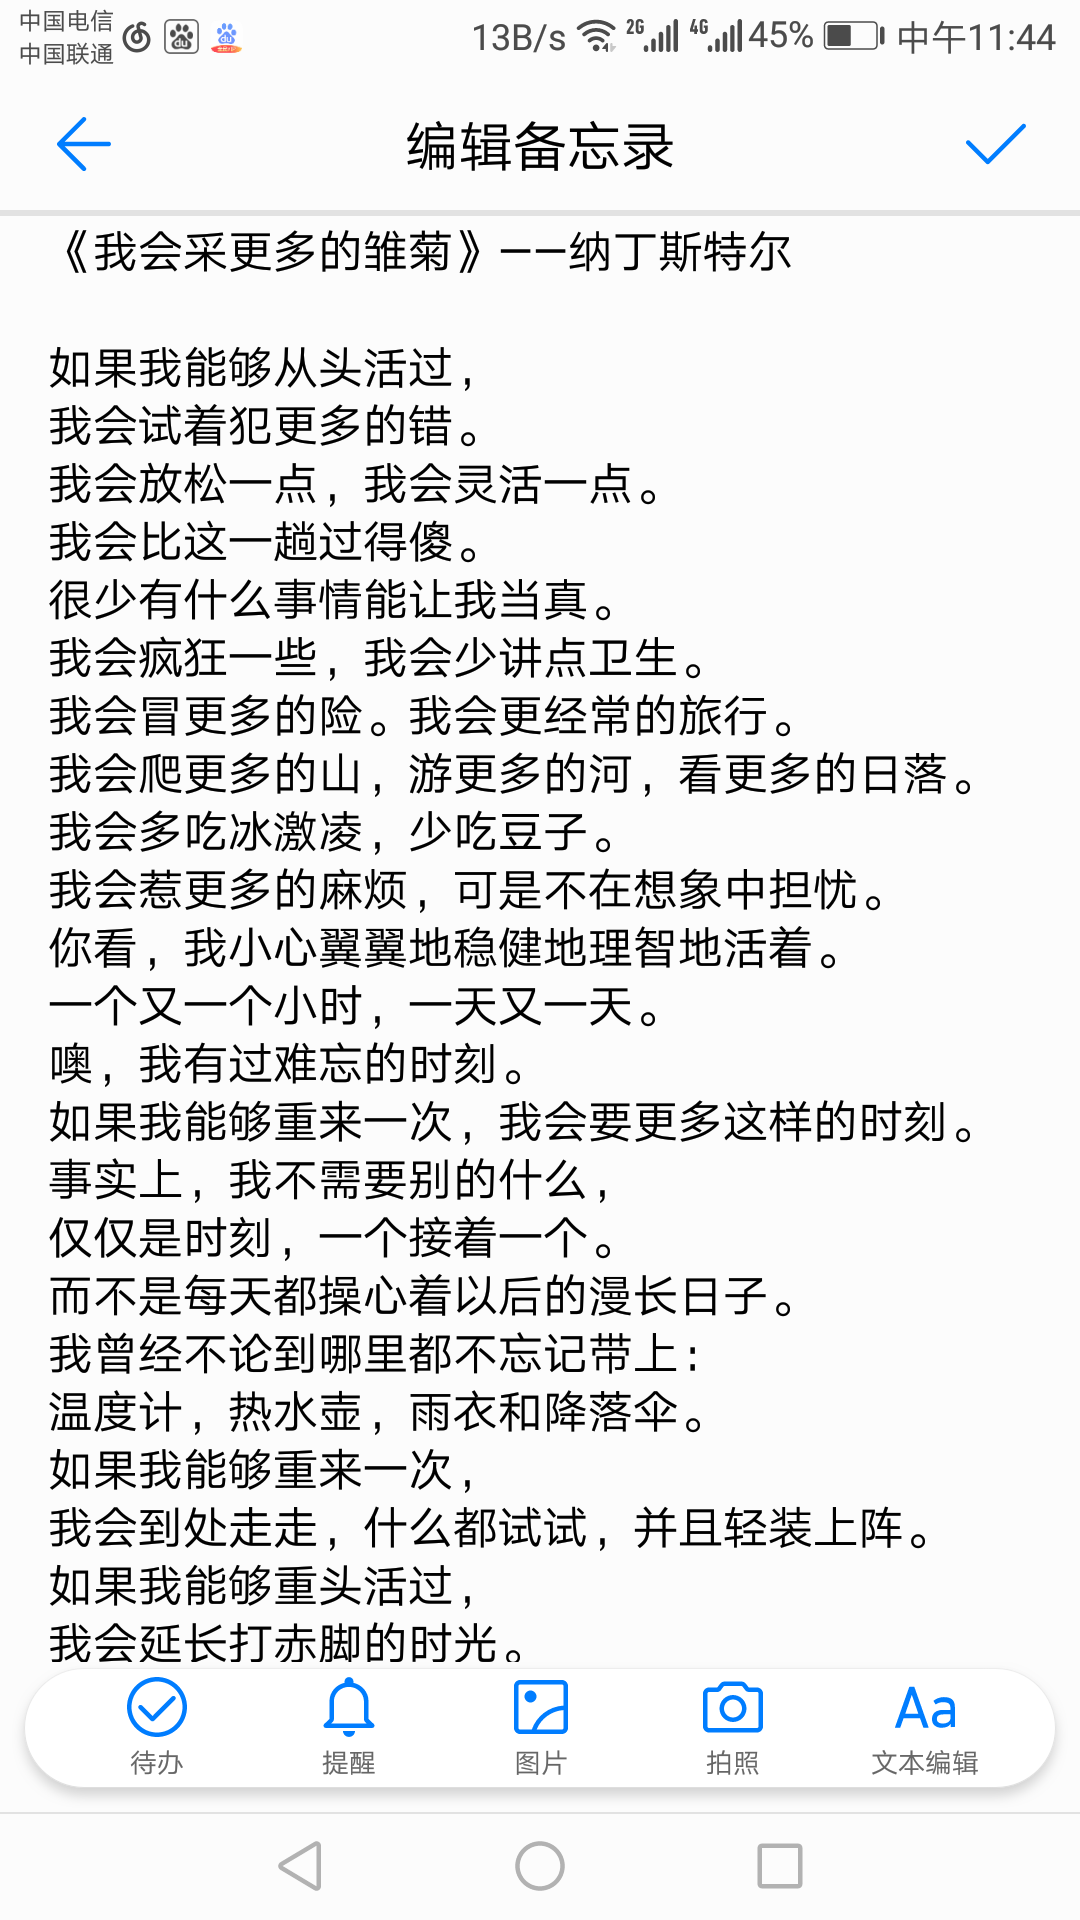 静南级远征那期,冯静说了一首诗,诗名是什么?